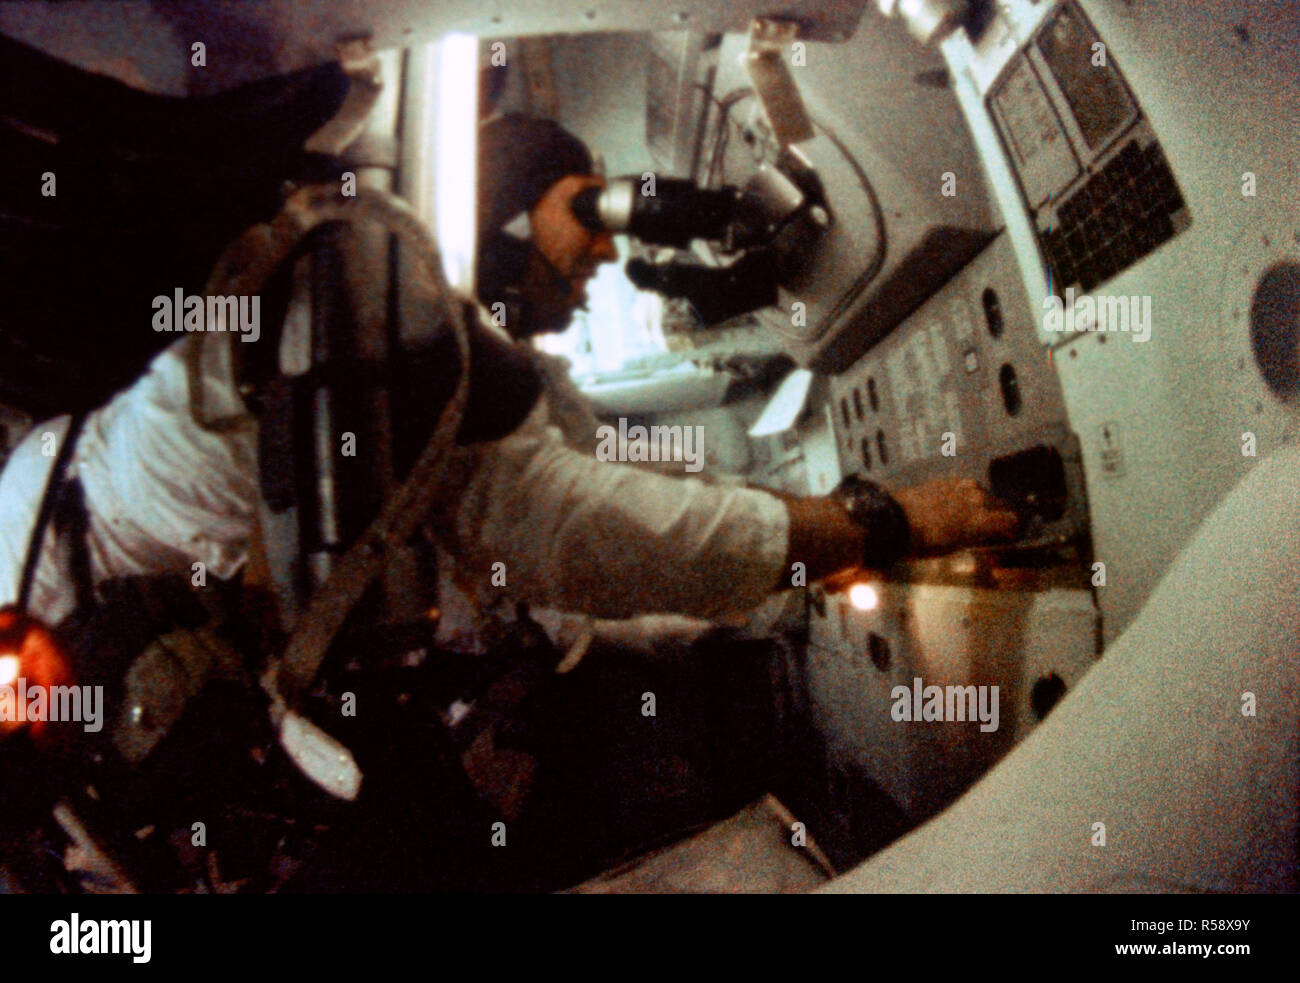 (21-27 dic. 1968) --- astronauta James A. Lovell Jr., Apollo 8 modulo di comando pilota, si è visto all'Apollo 8 veicoli spaziali del comando del modulo di orientamento e navigazione stazione durante l' Apollo 8 orbita lunare missione. Questa foto è stata scattata da 16mm di pellicola cinematografica. Foto Stock